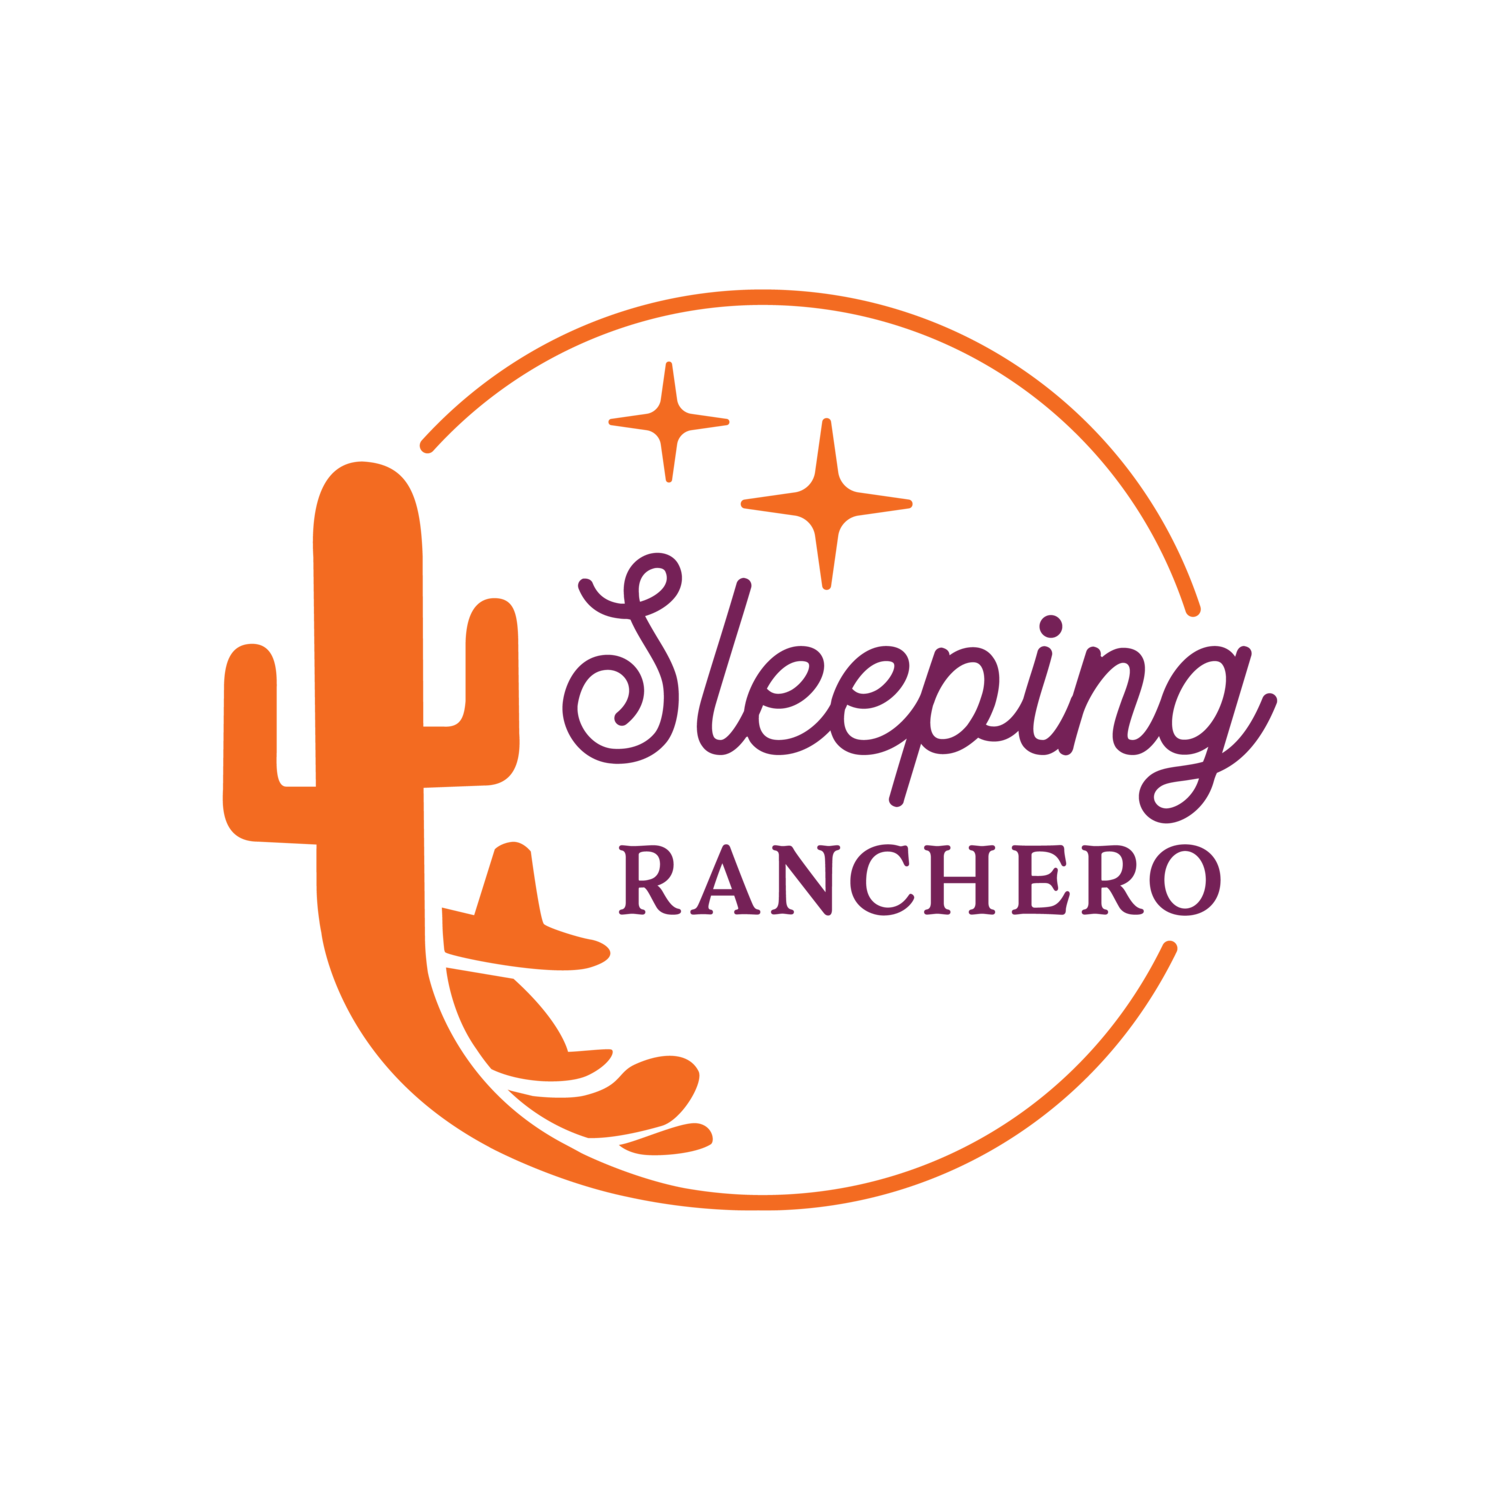 Sleeping Ranchero